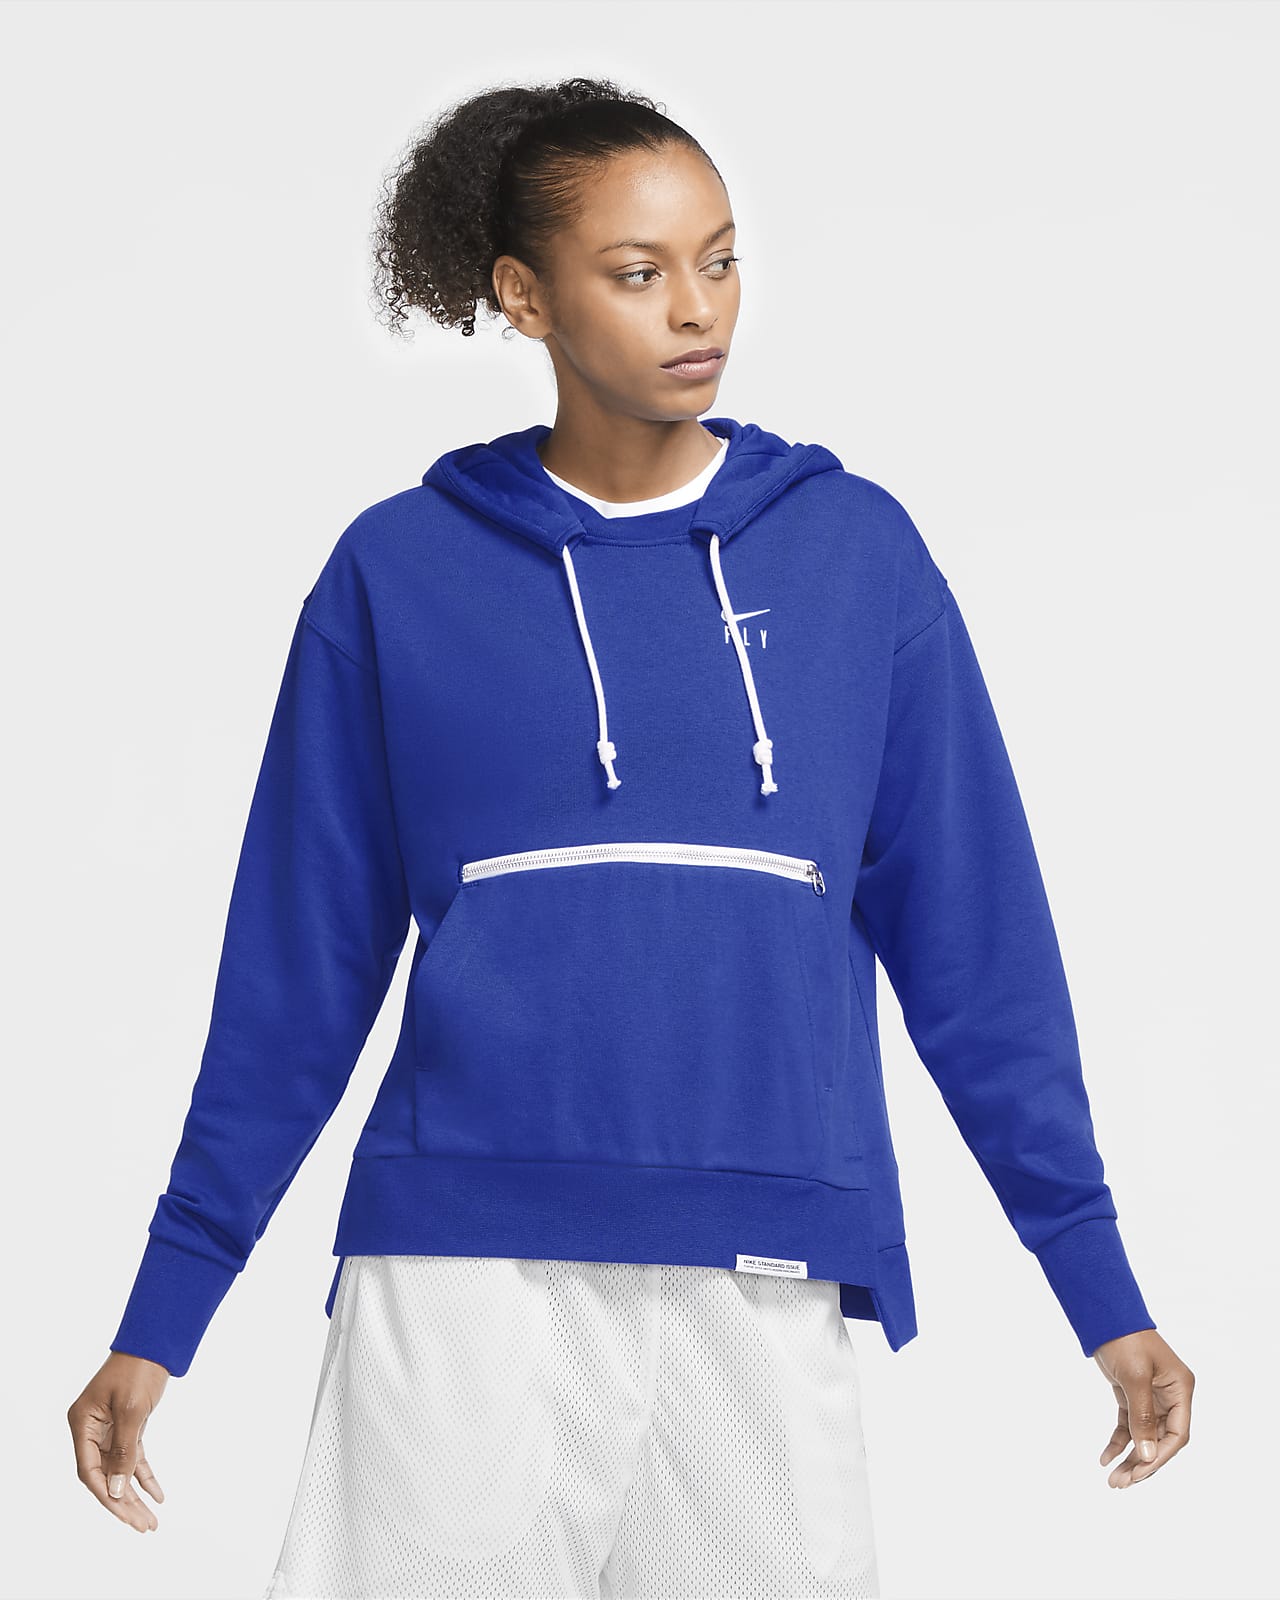 Sudadera con capucha sin cierre de básquetbol para mujer Nike Swoosh Fly  Standard Issue. Nike MX